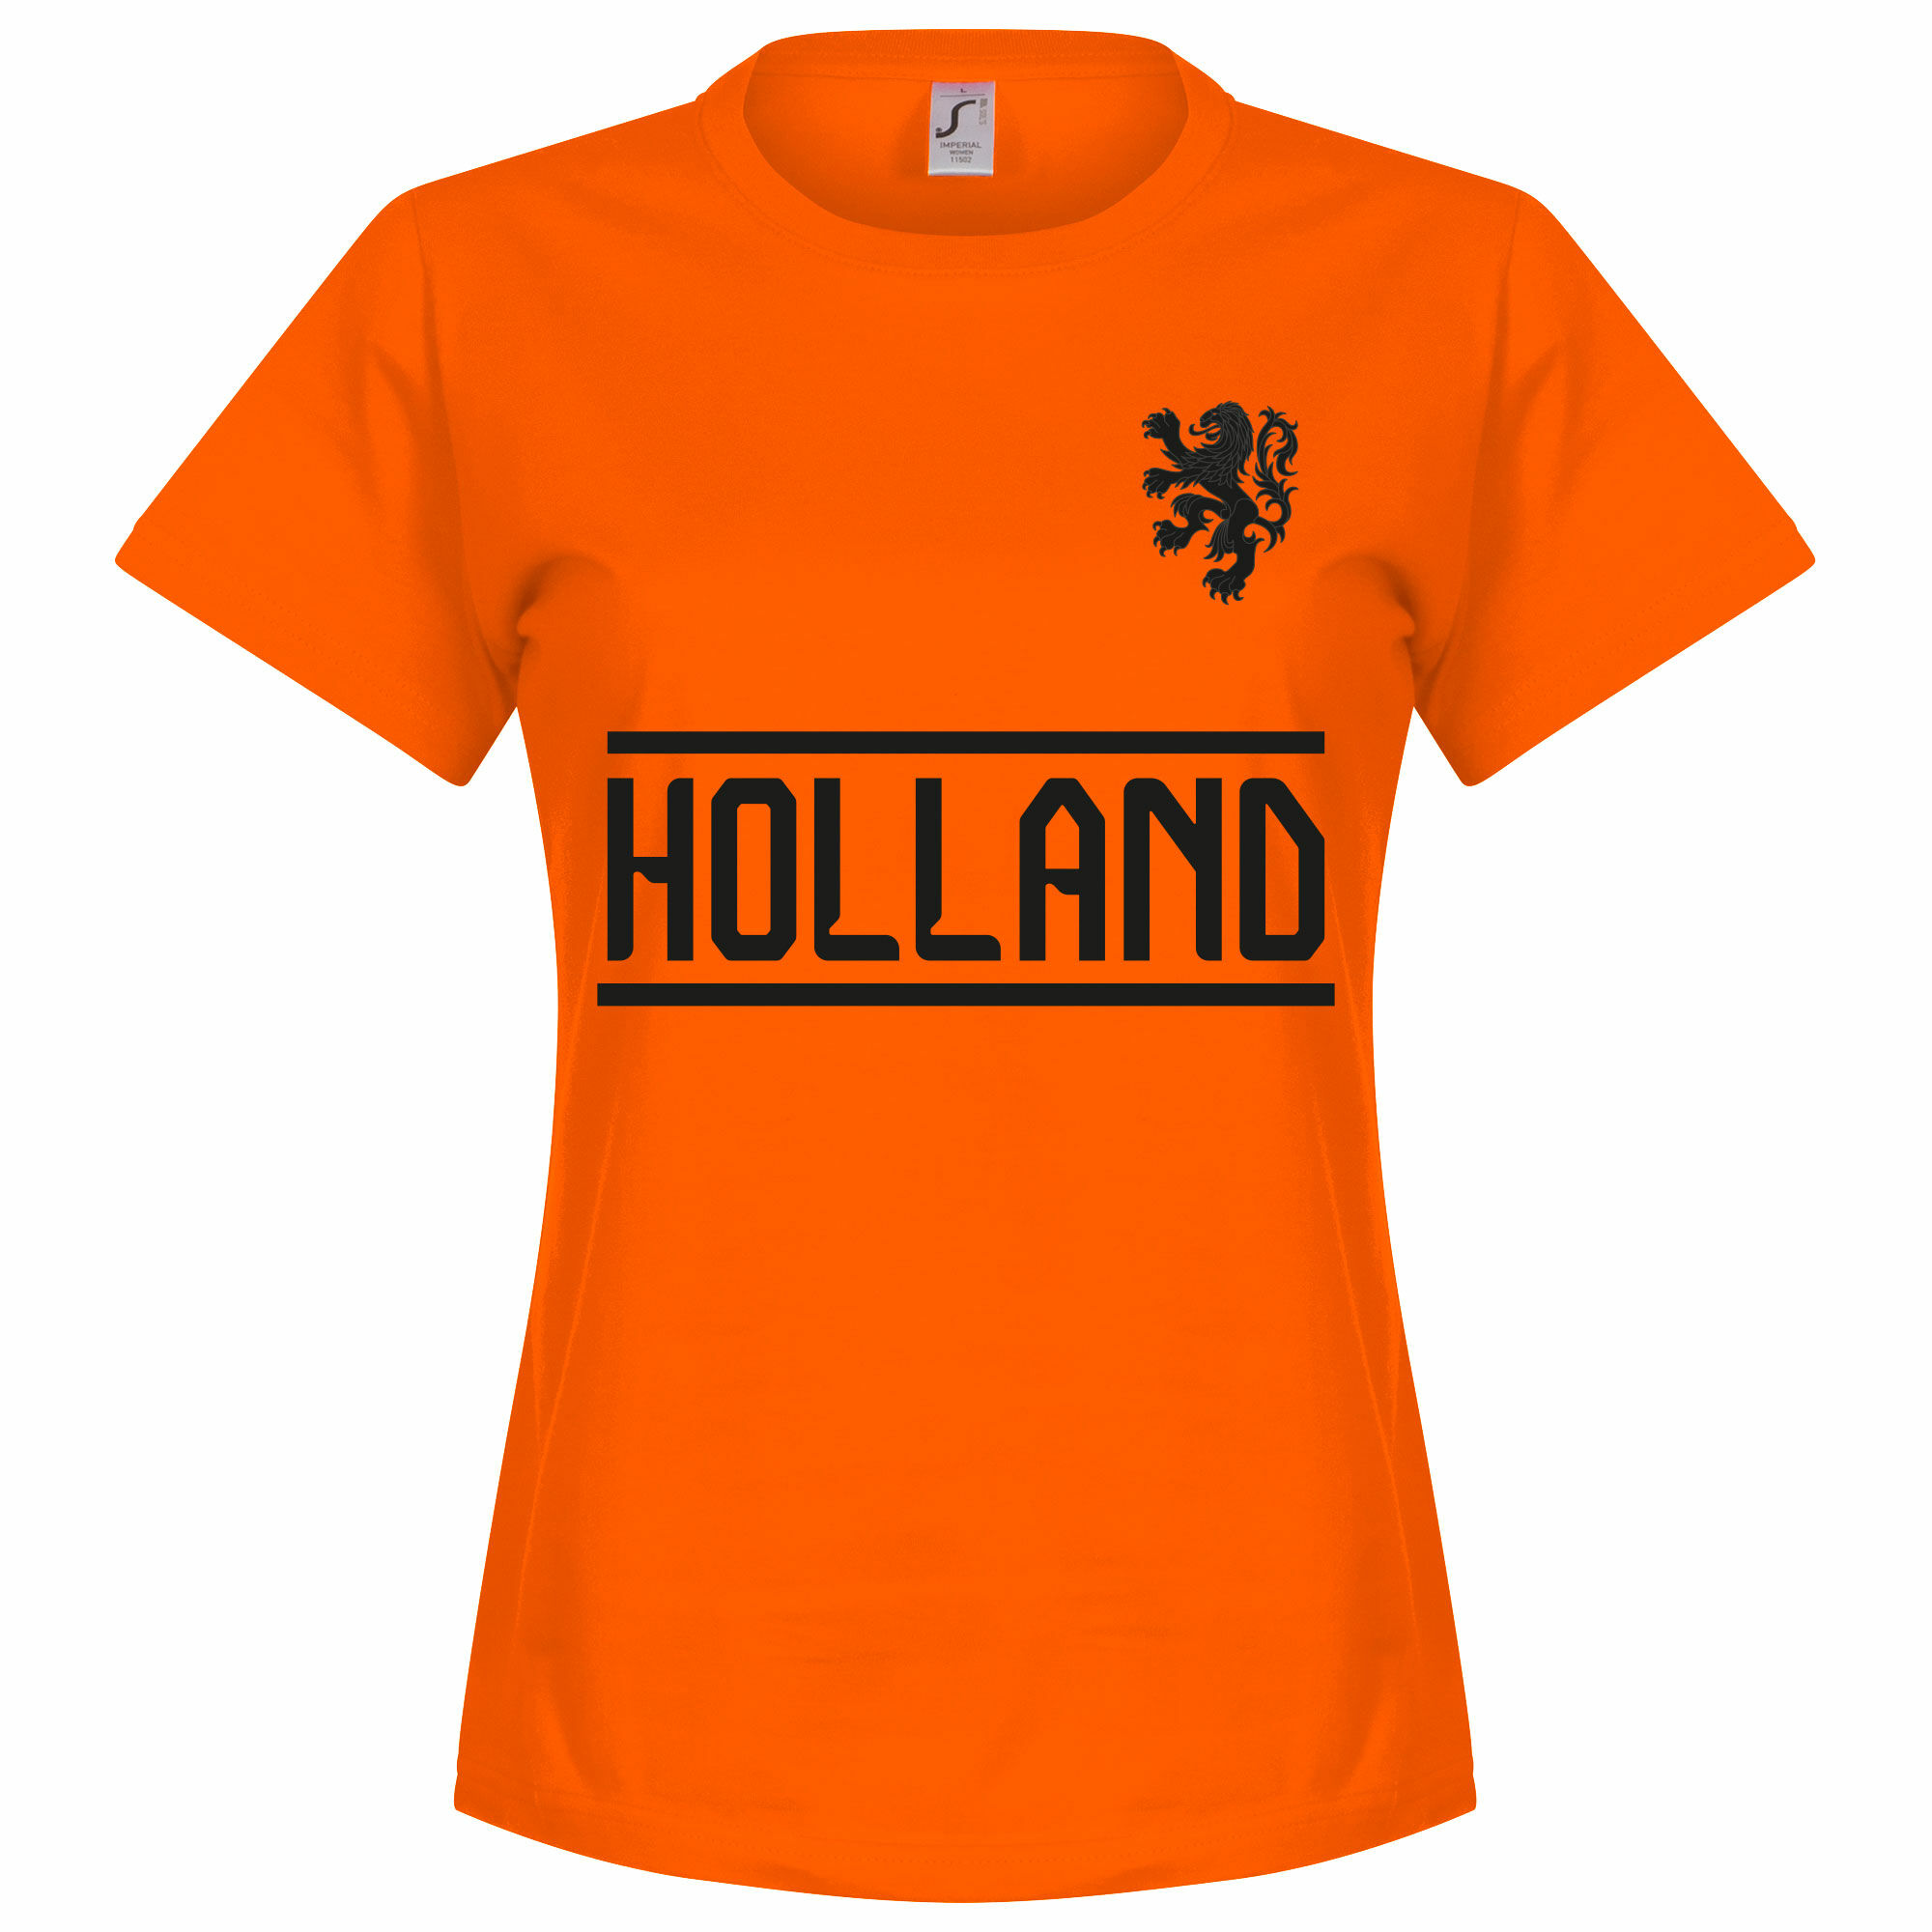 Nizozemí - Tričko dámské - oranžové